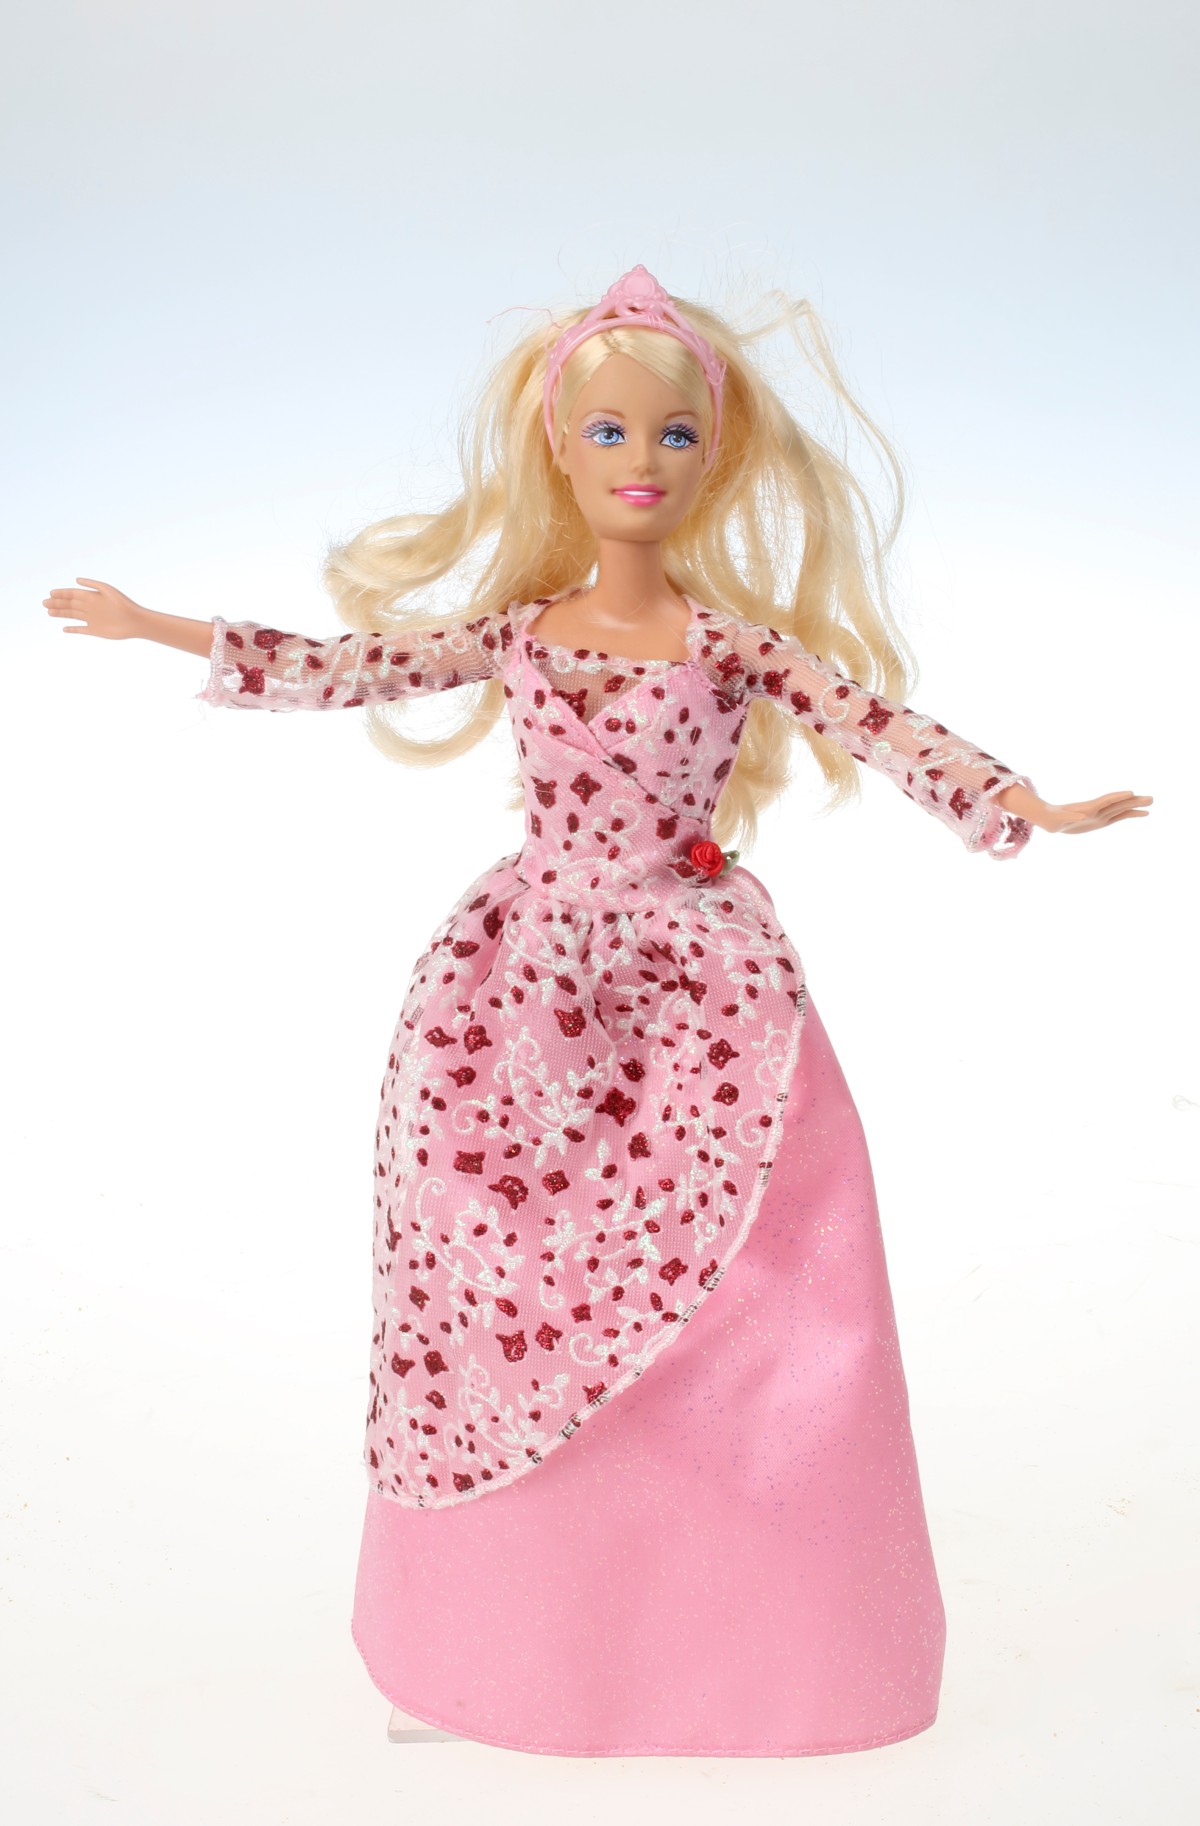 : Eine "traditionelle" Barbie-Puppe in pinker Bekleidung.